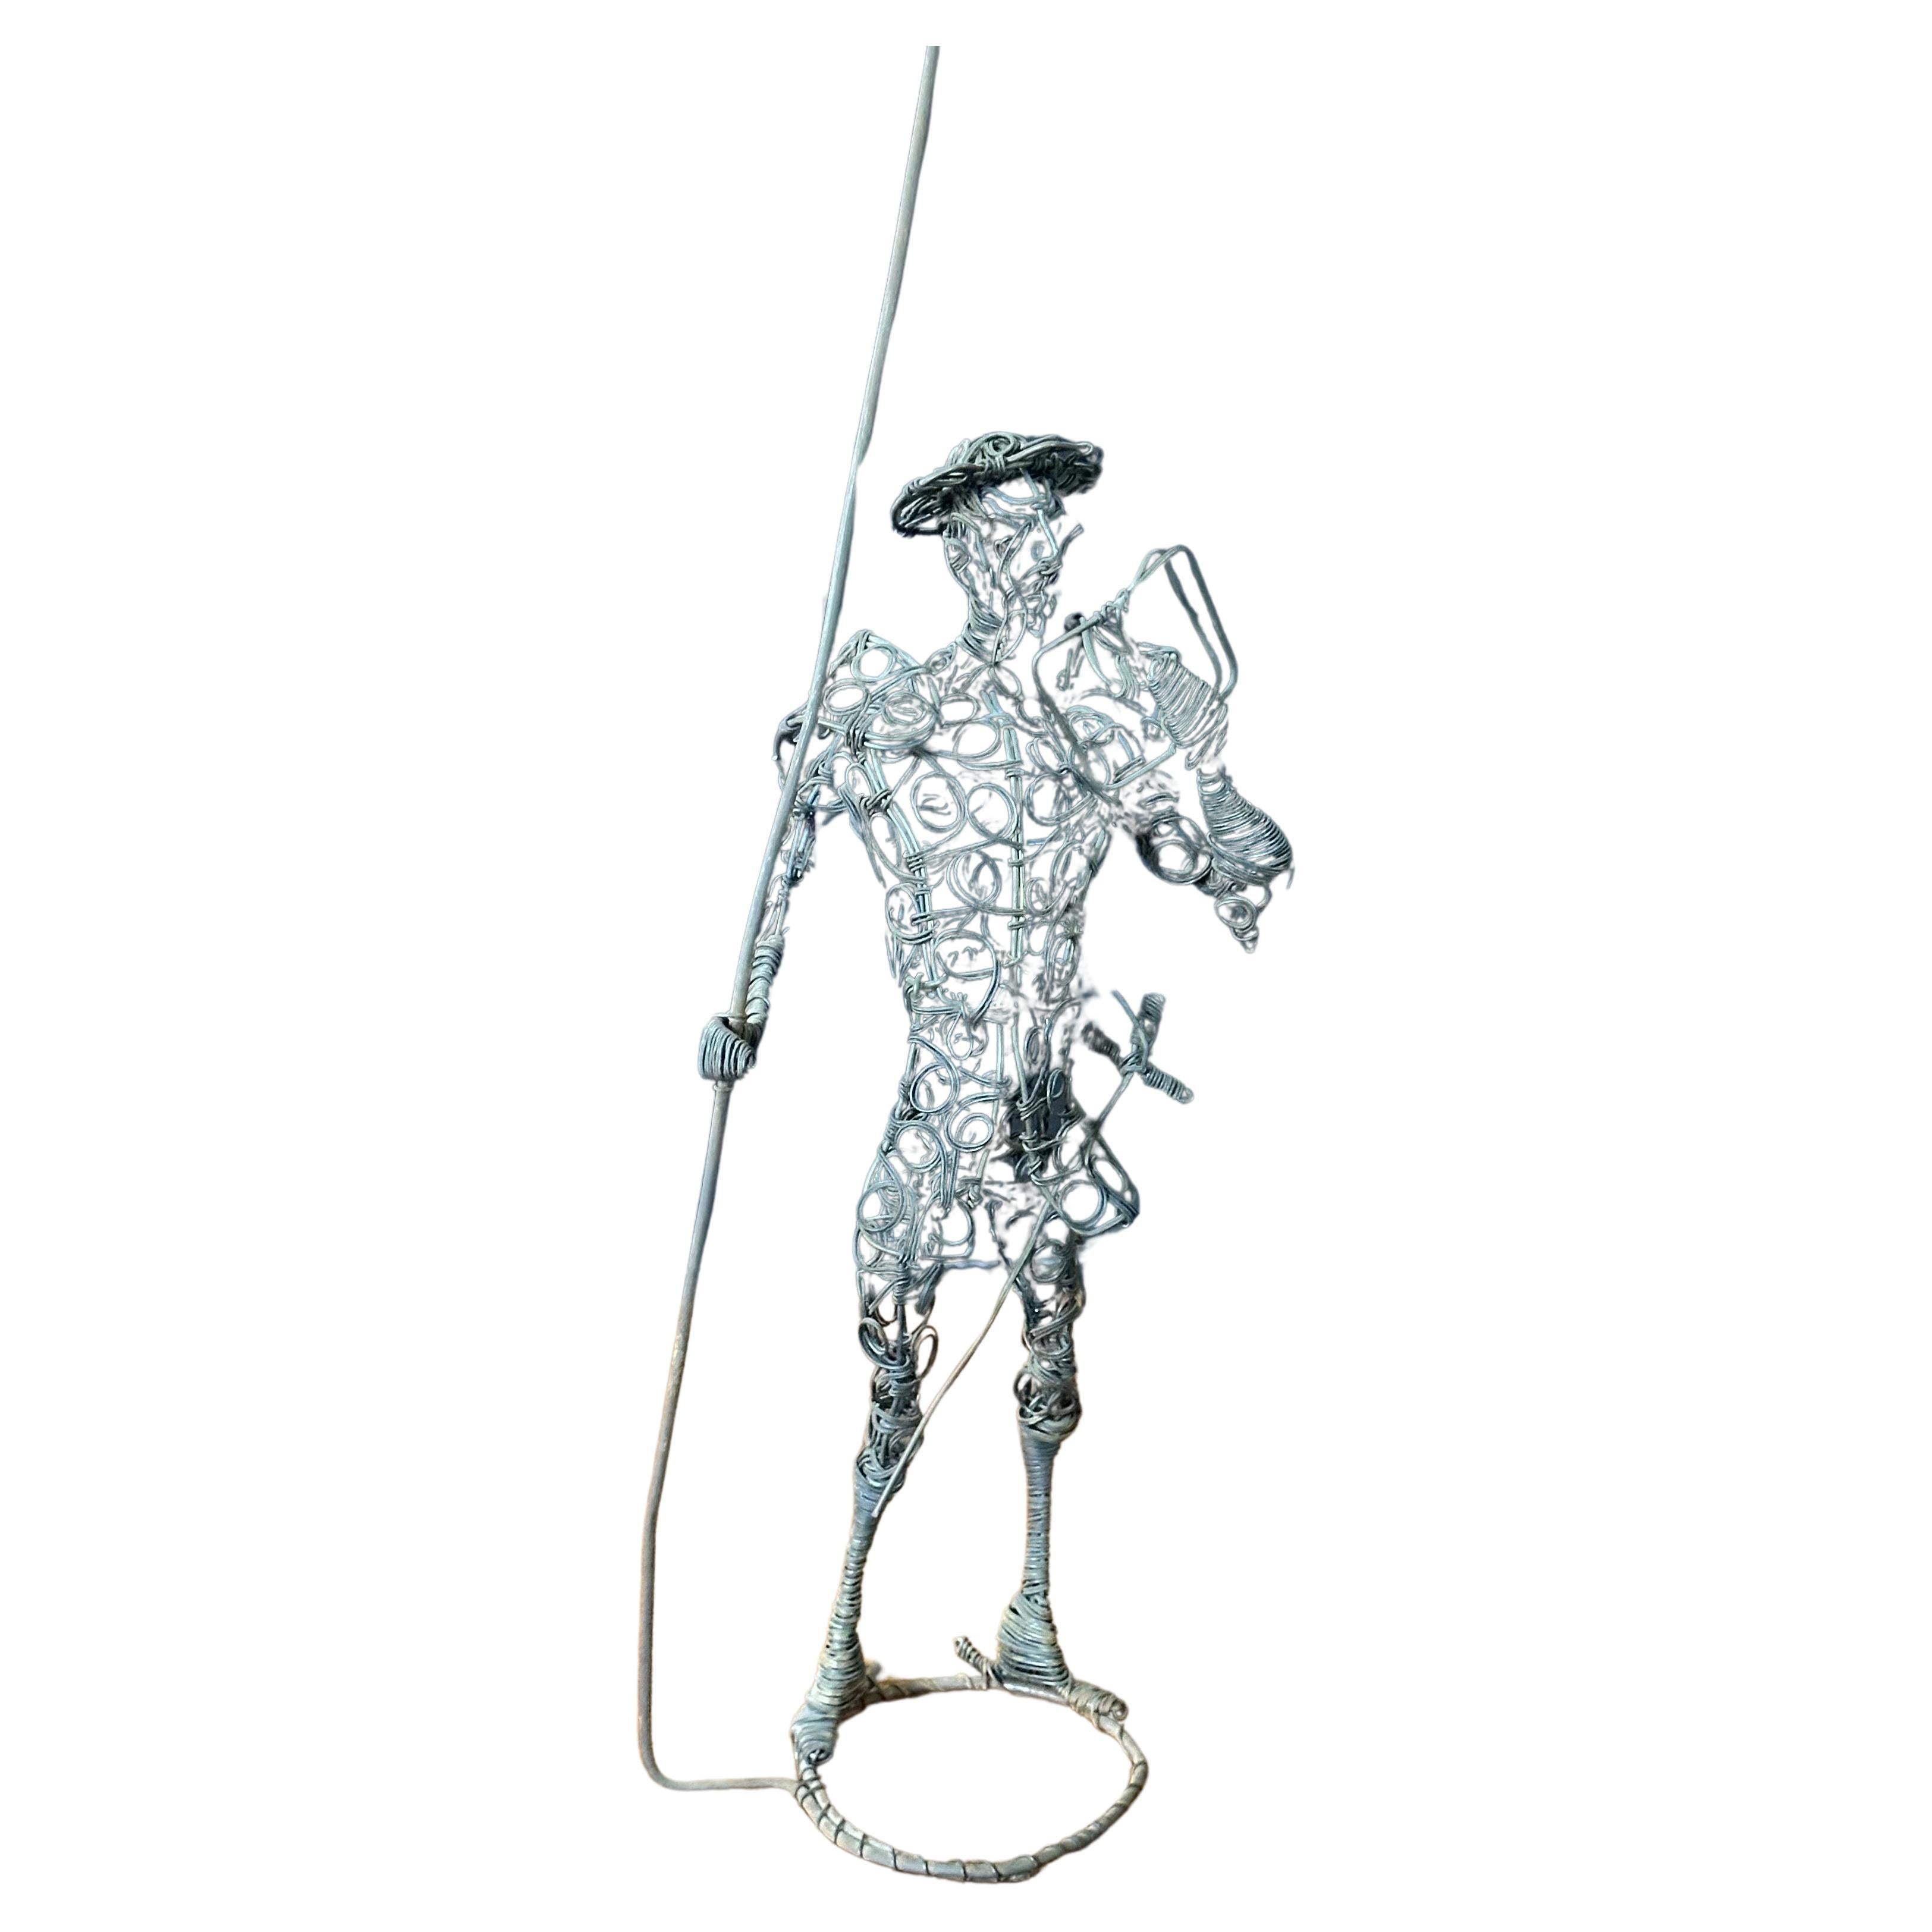 Sculpture en fil de fer brutaliste vintage Don Quichotte, circa 1970. Cette sculpture en fil de fer fabriquée à la main a un magnifique aspect brutal et ajouterait beaucoup de caractère à toute collection de Don Quichotte ou d'